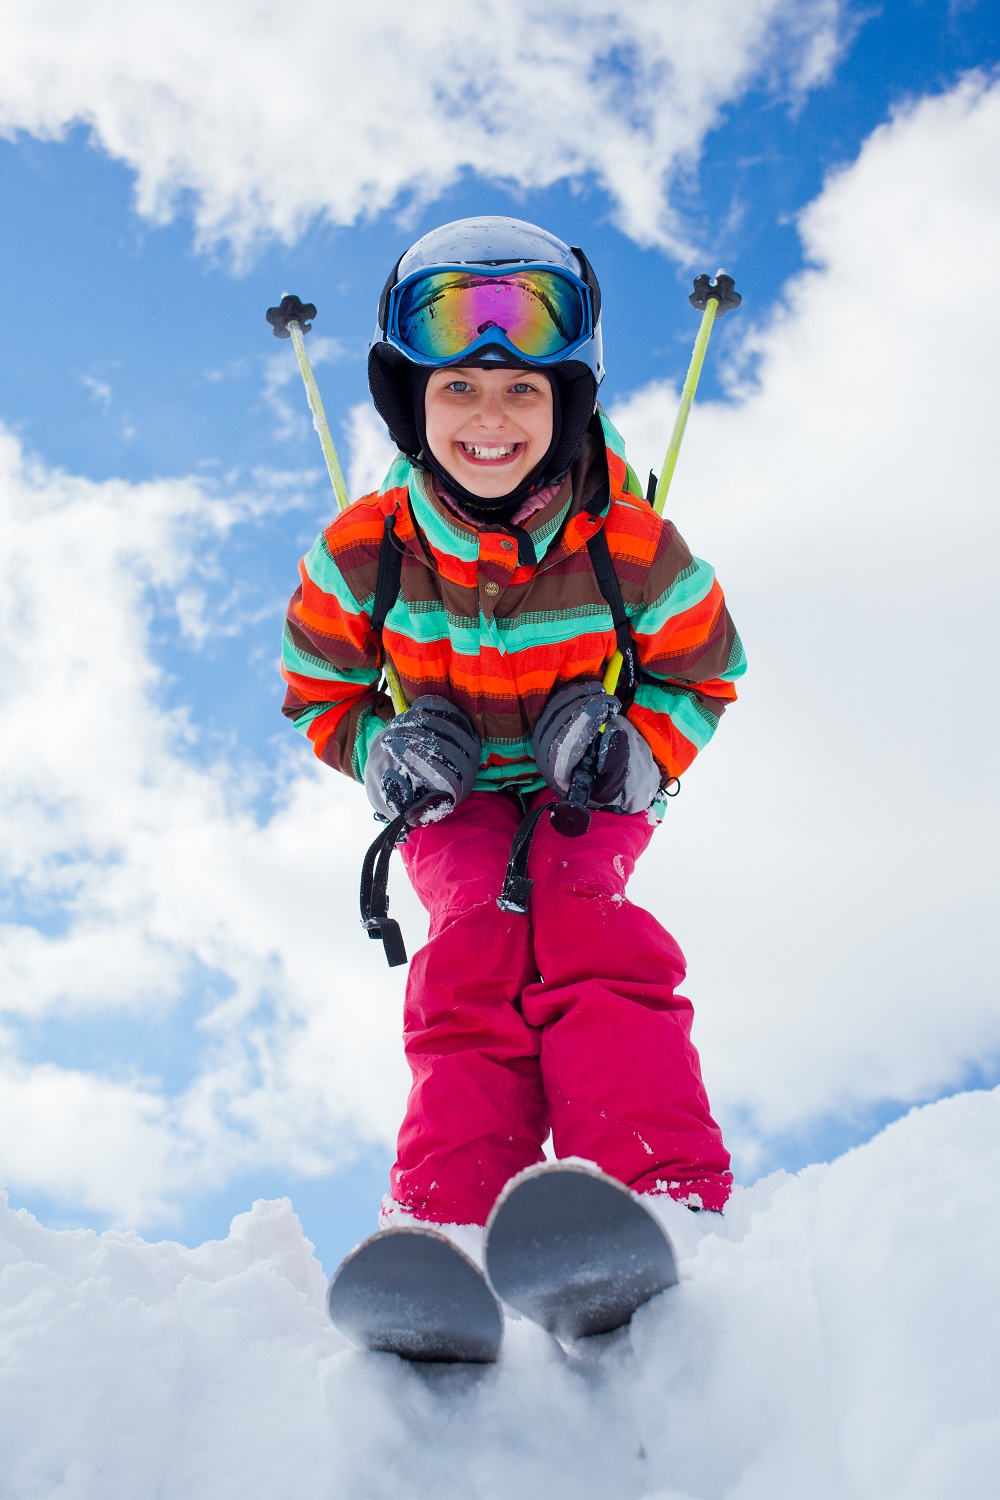 Dítě na lyžích